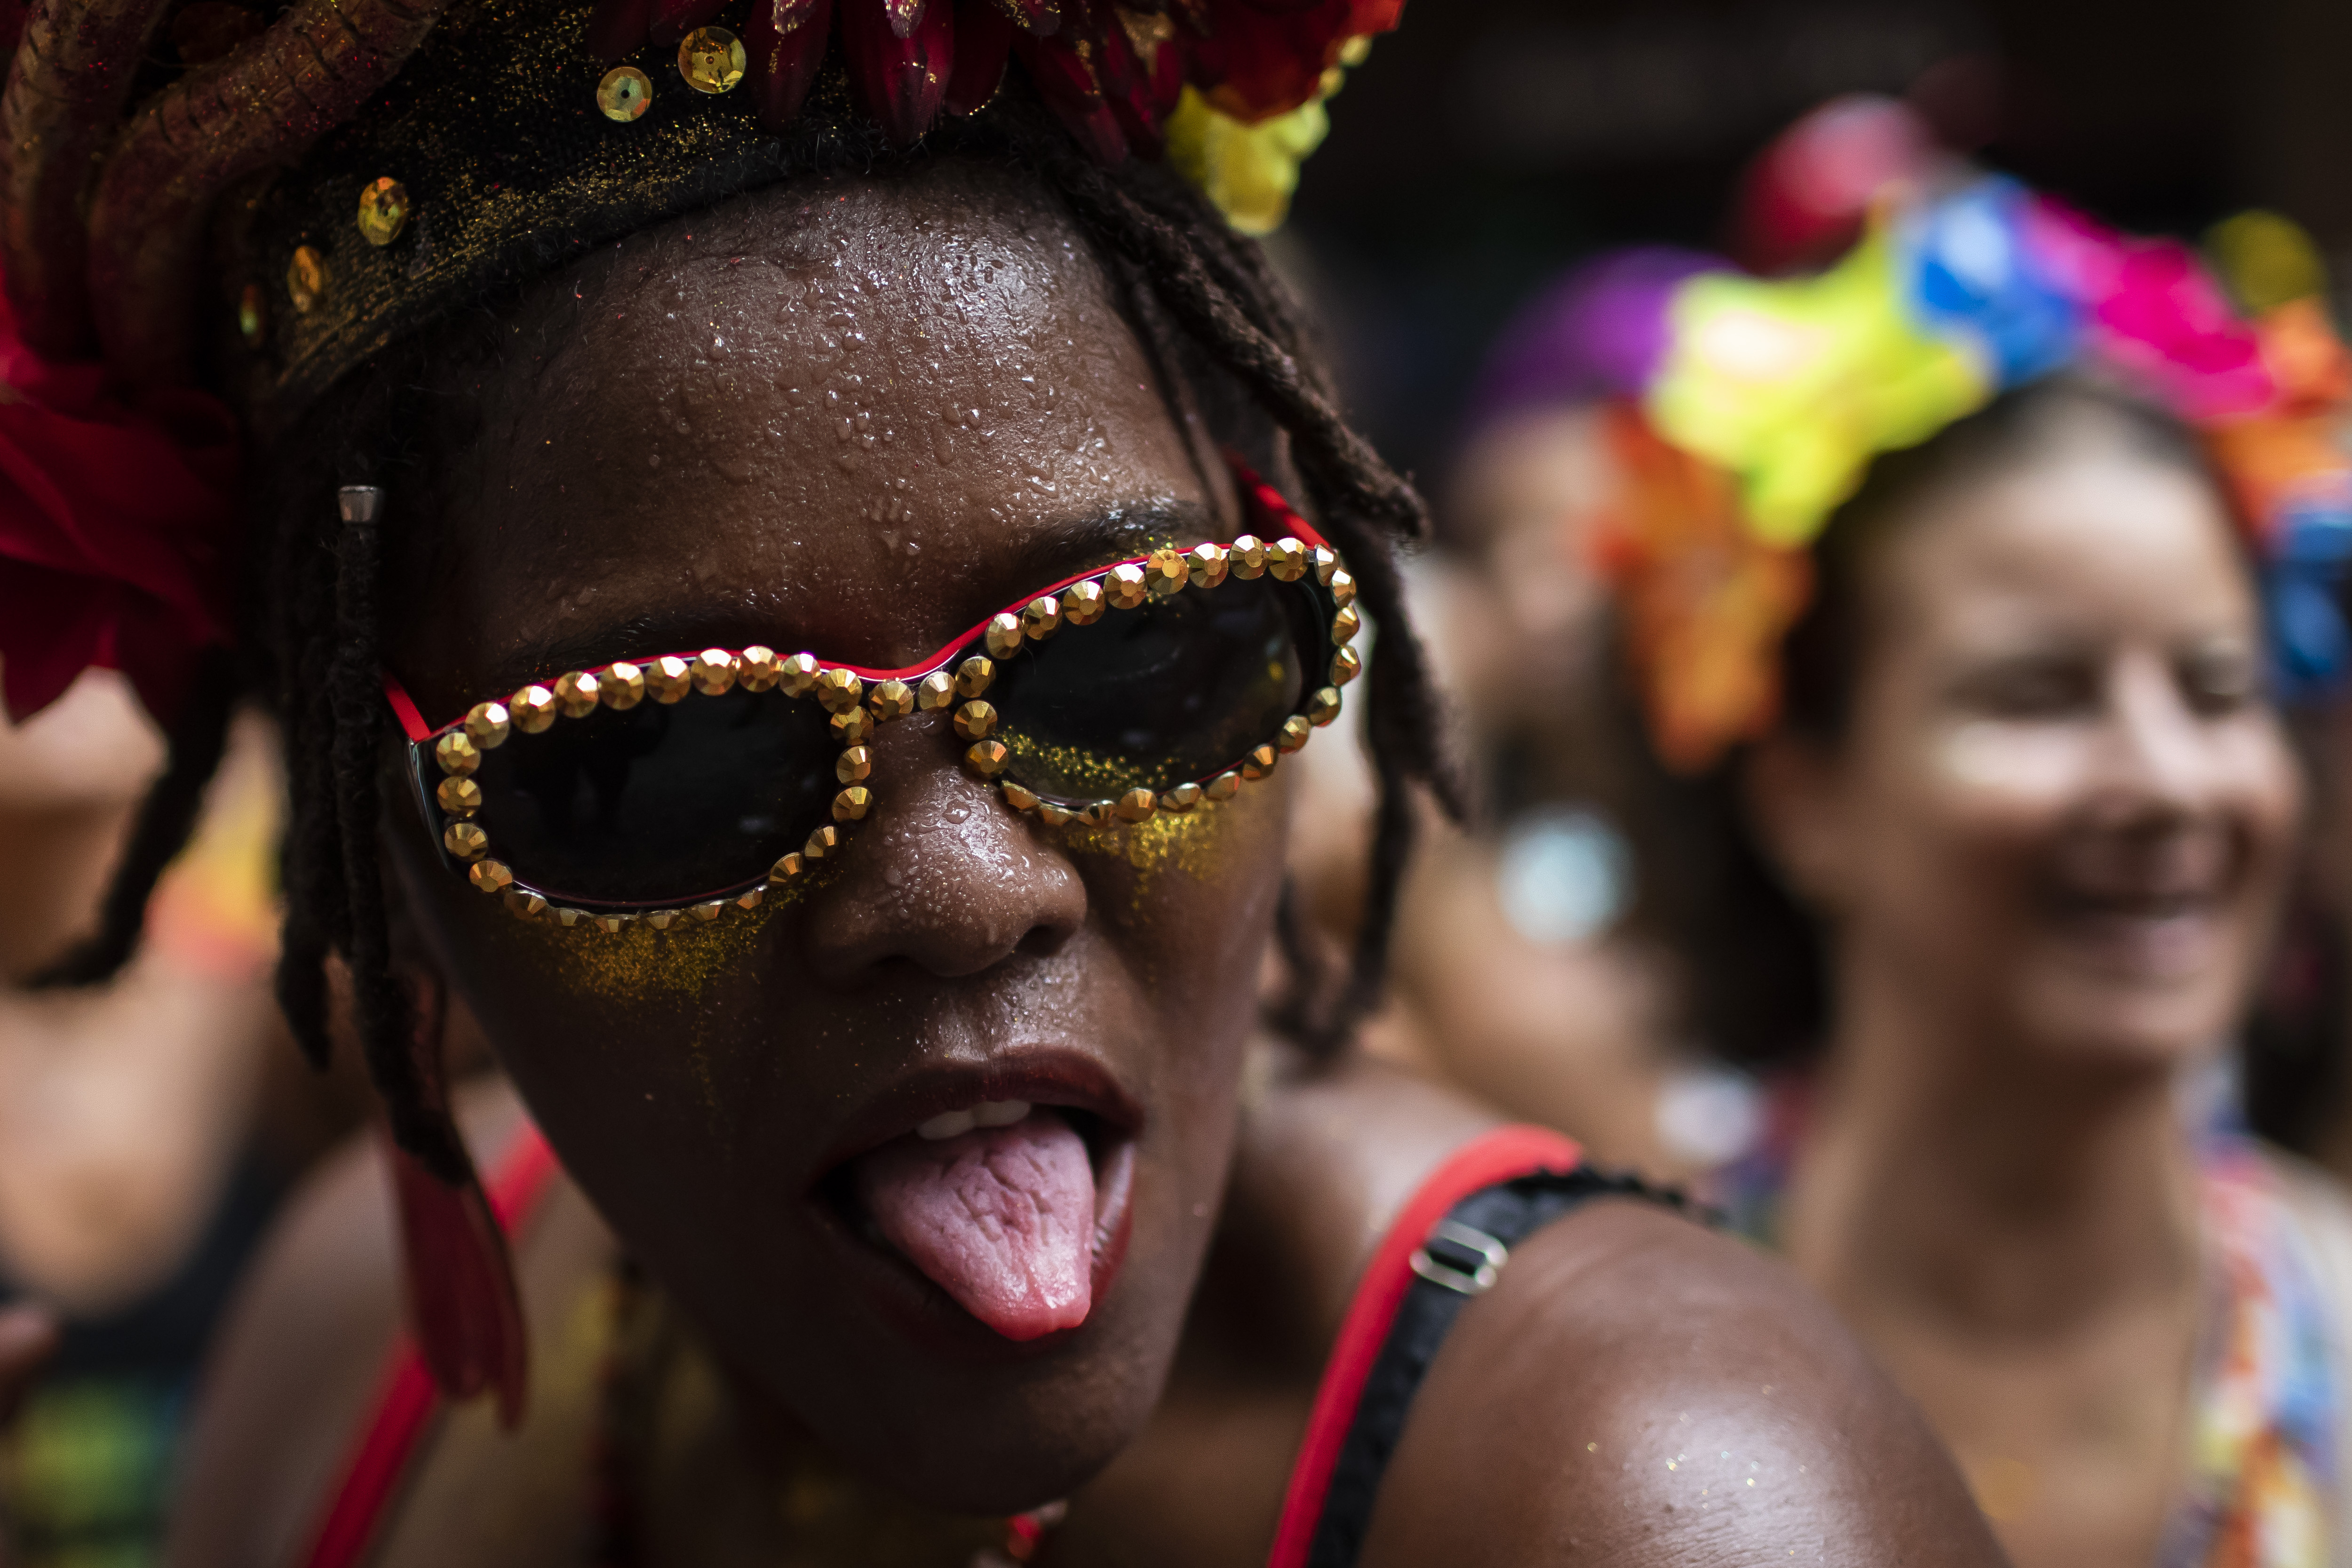 Una juerguista saca la lengua durante una fiesta previa al Carnaval organizada por el grupo "Cordao do Boitata", en Río de Janeiro, Brasil, el 12 de febrero de 2023. Los fiesteros toman las calles para asistir a fiestas al aire libre organizadas por los llamados blocos antes del inicio oficial del Carnaval el 17 de febrero. (AP Foto/Bruna Prado)